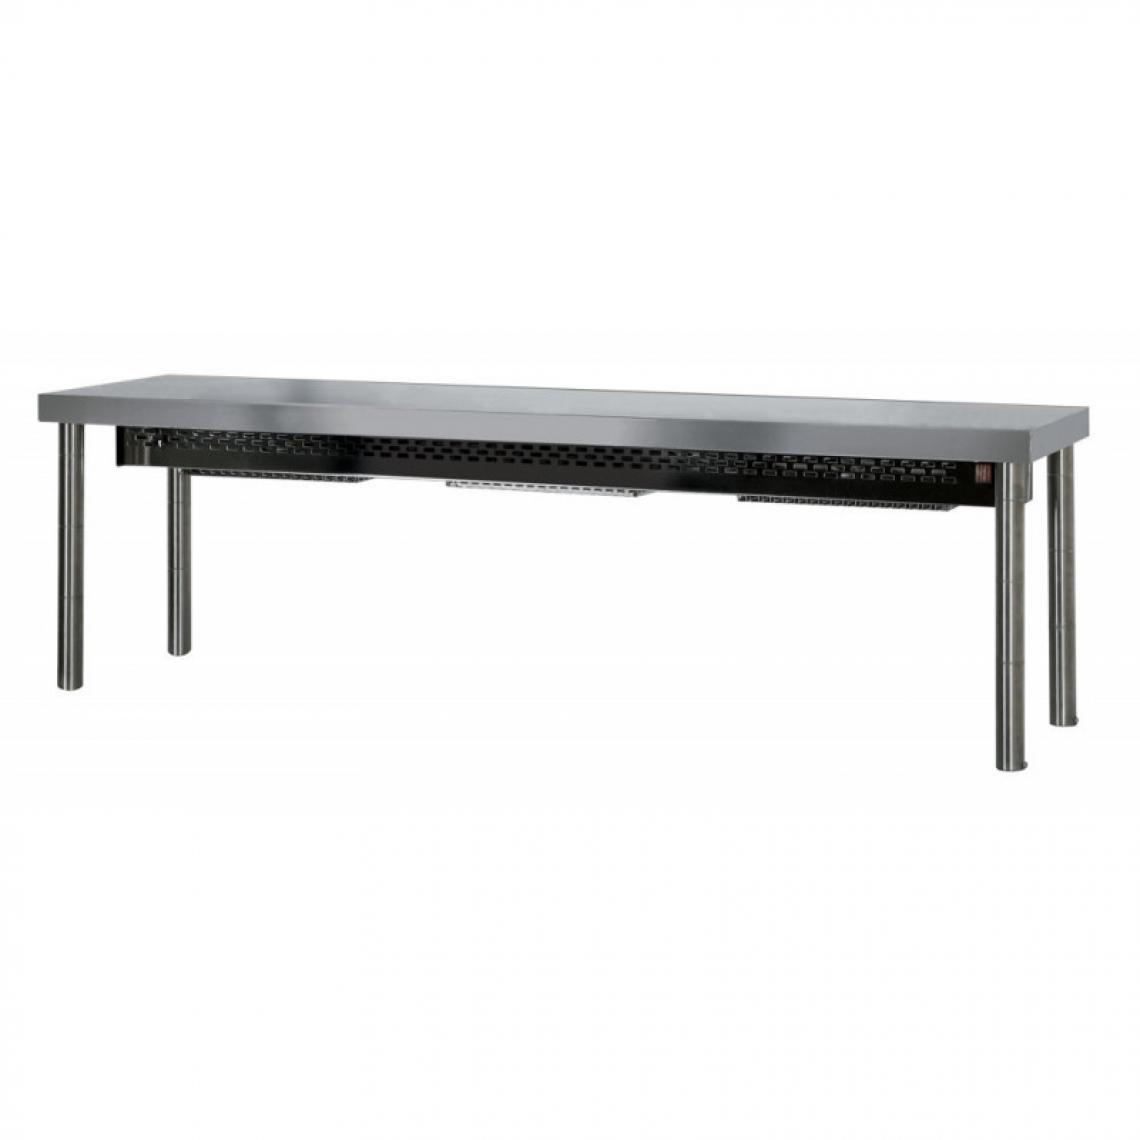 Materiel Chr Pro - Table Chauffante 1 Niveau - Hauteur 400 mm - L 1200 à 1800 mm - 1600 mm - Etagères